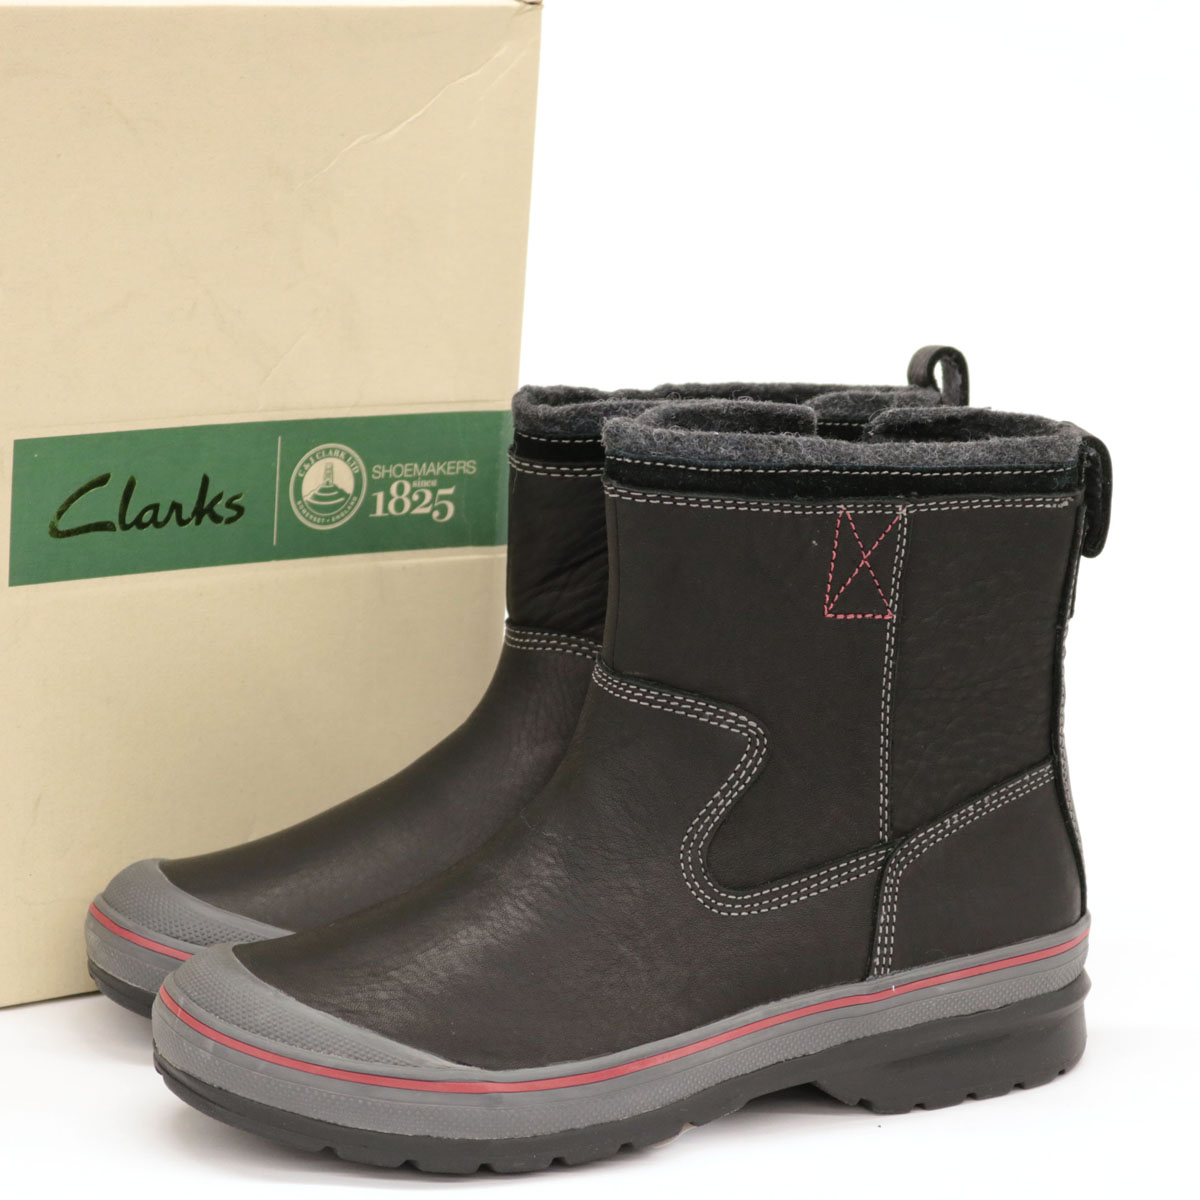 clarks rain boots